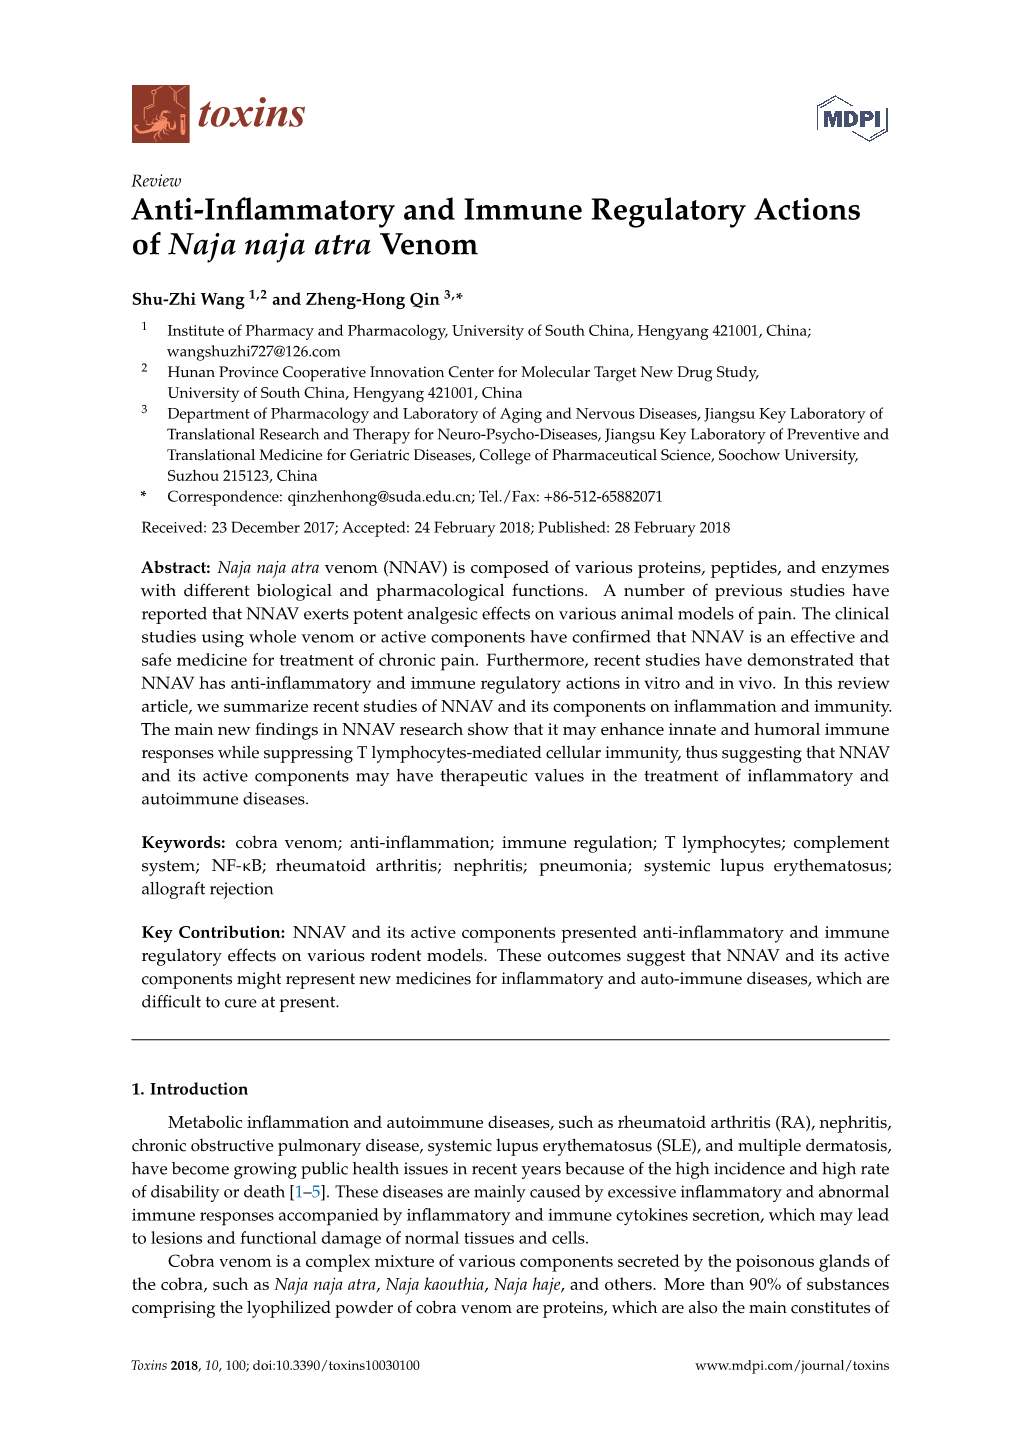 Anti-Inflammatory and Immune Regulatory Actions of Naja Naja